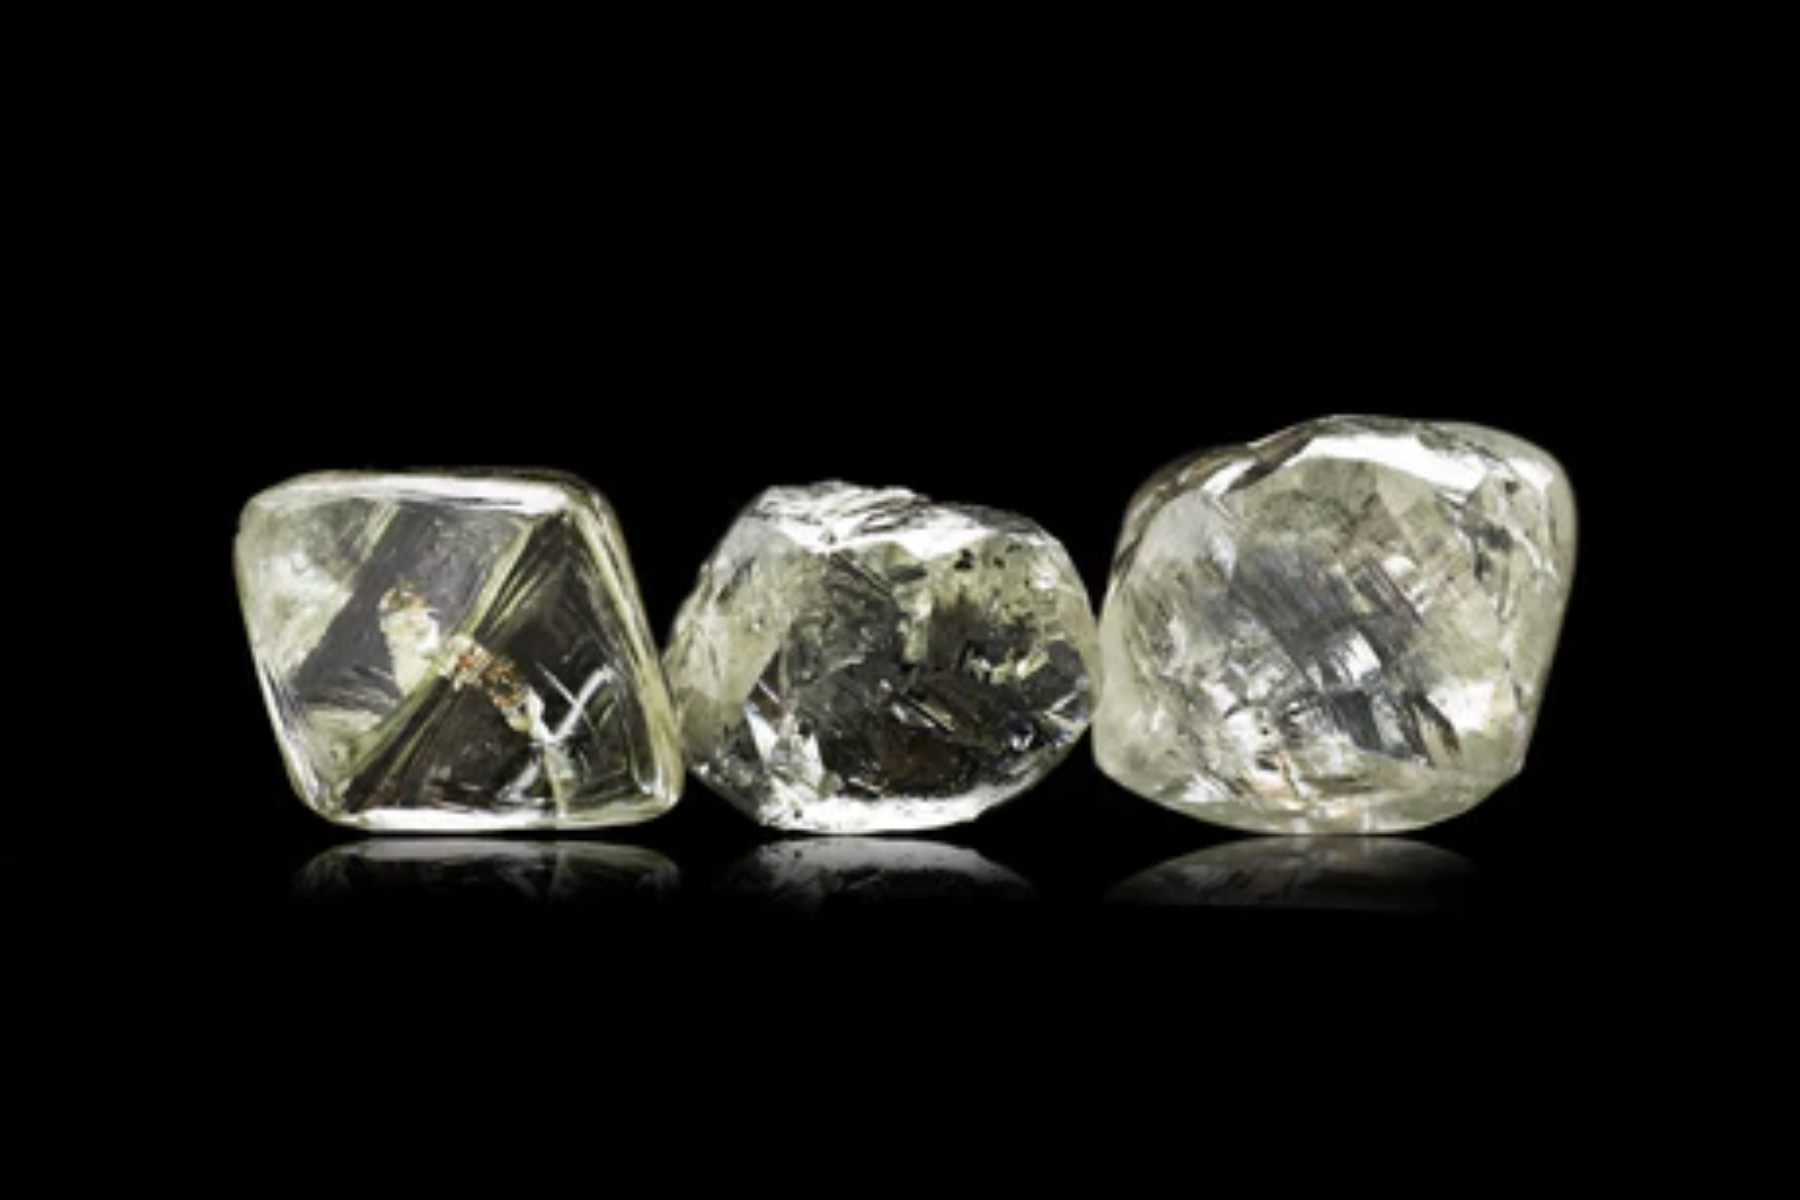 Diamonds in three distinct cuts